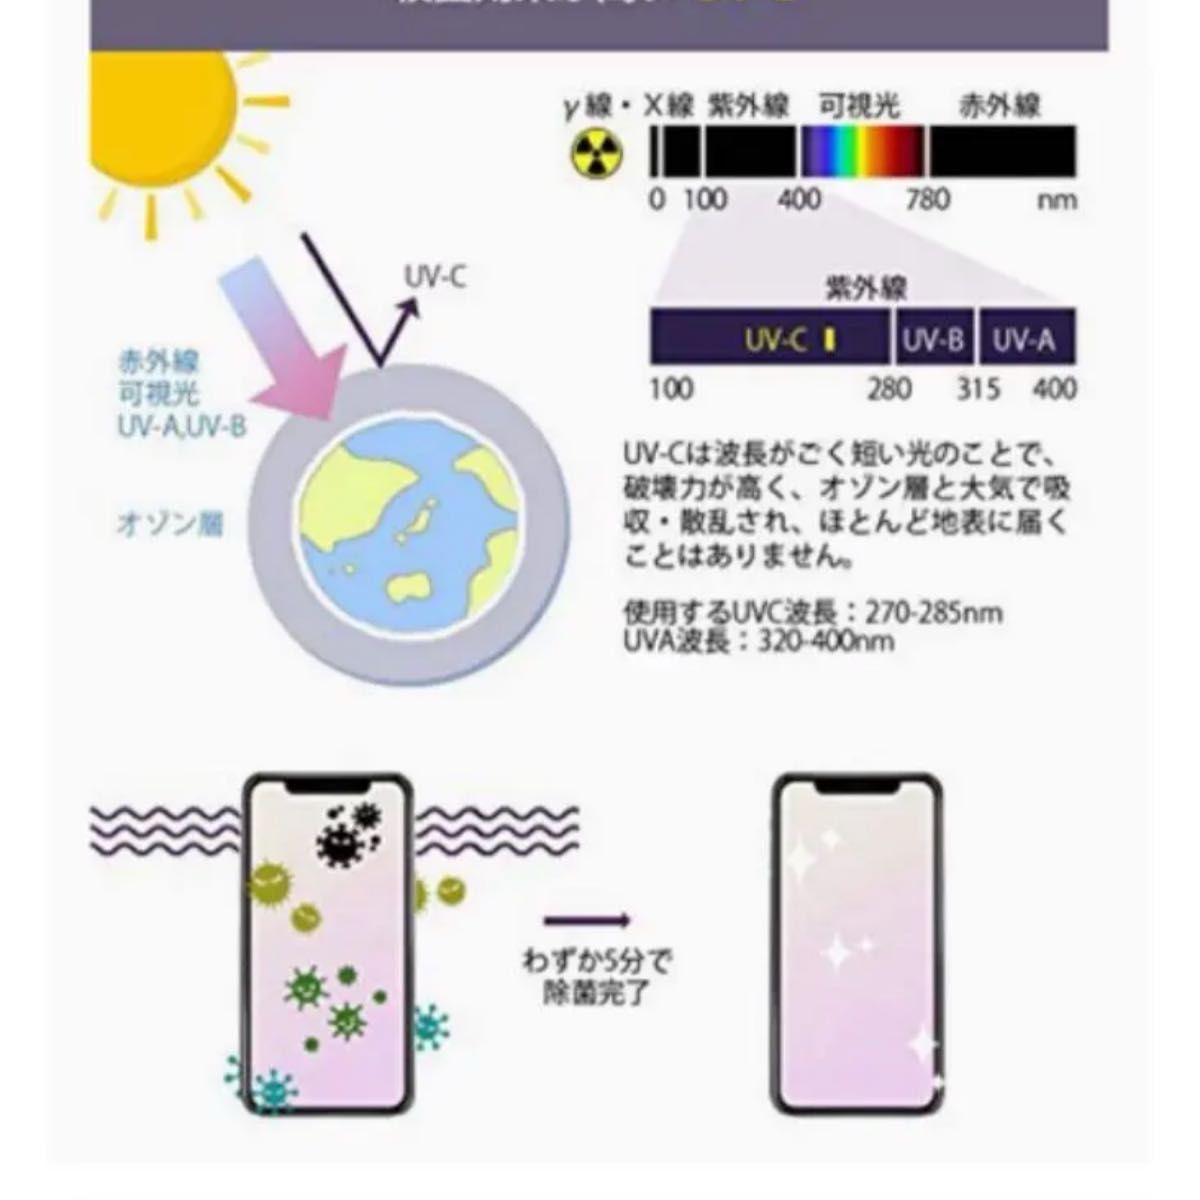 新品ワイヤレス充電器iPhoneスマホUV紫外線殺菌機能付き充電スマホ収納ケースメガネアクセサリー眼鏡アイフォン